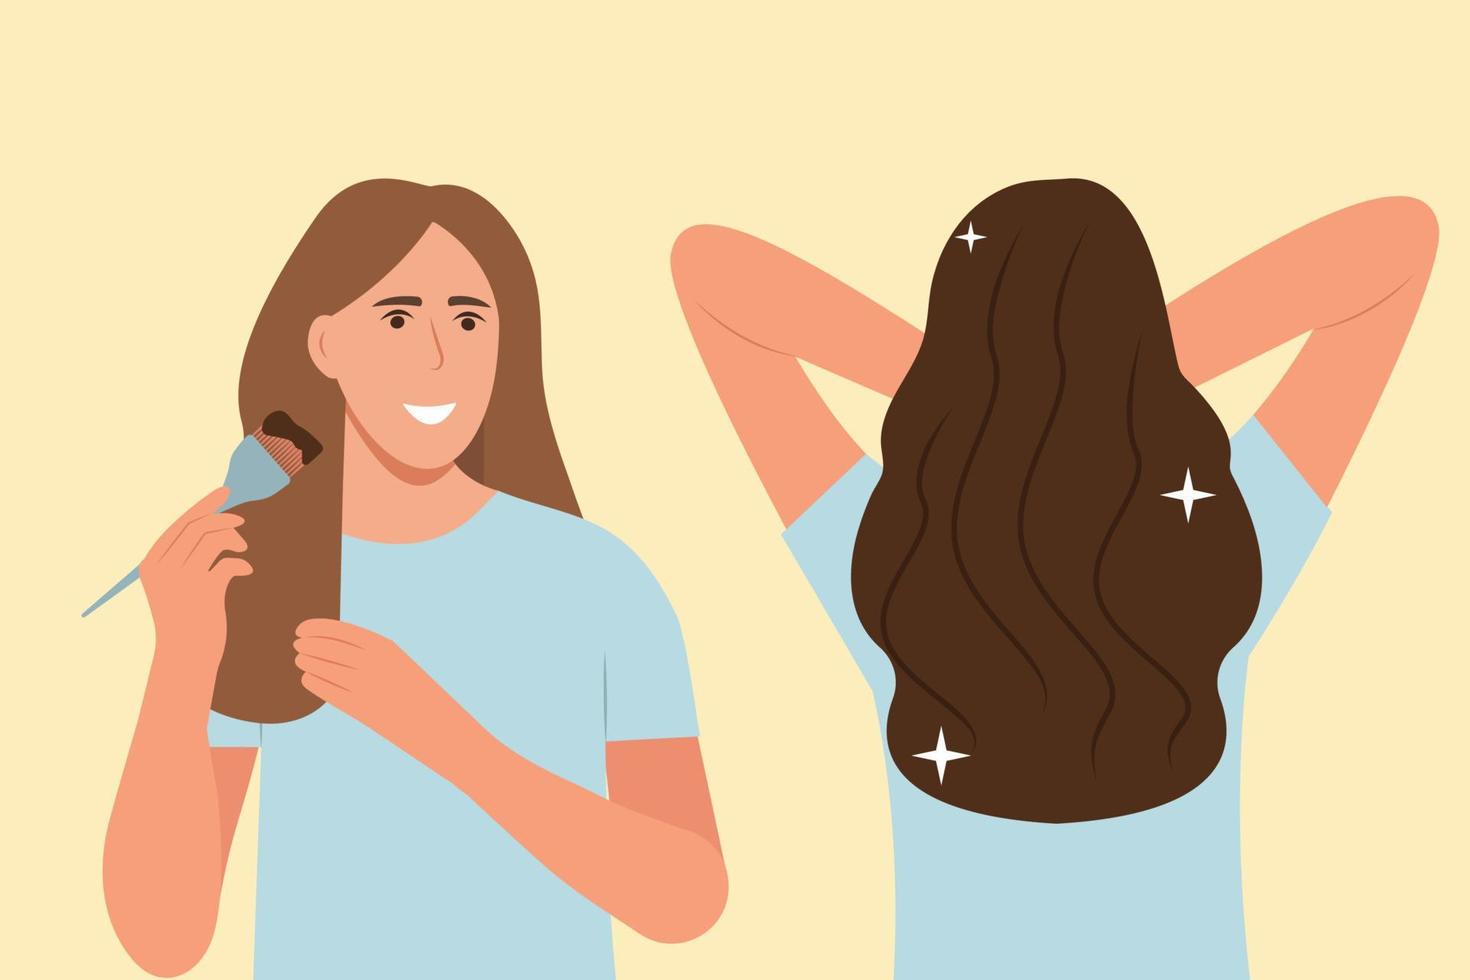 hur man färgar håret hemma guide. hårfärgningsprocess. skönhetsprocedur. applicera färgkräm på håret med borste. före och efter. vektor illustration